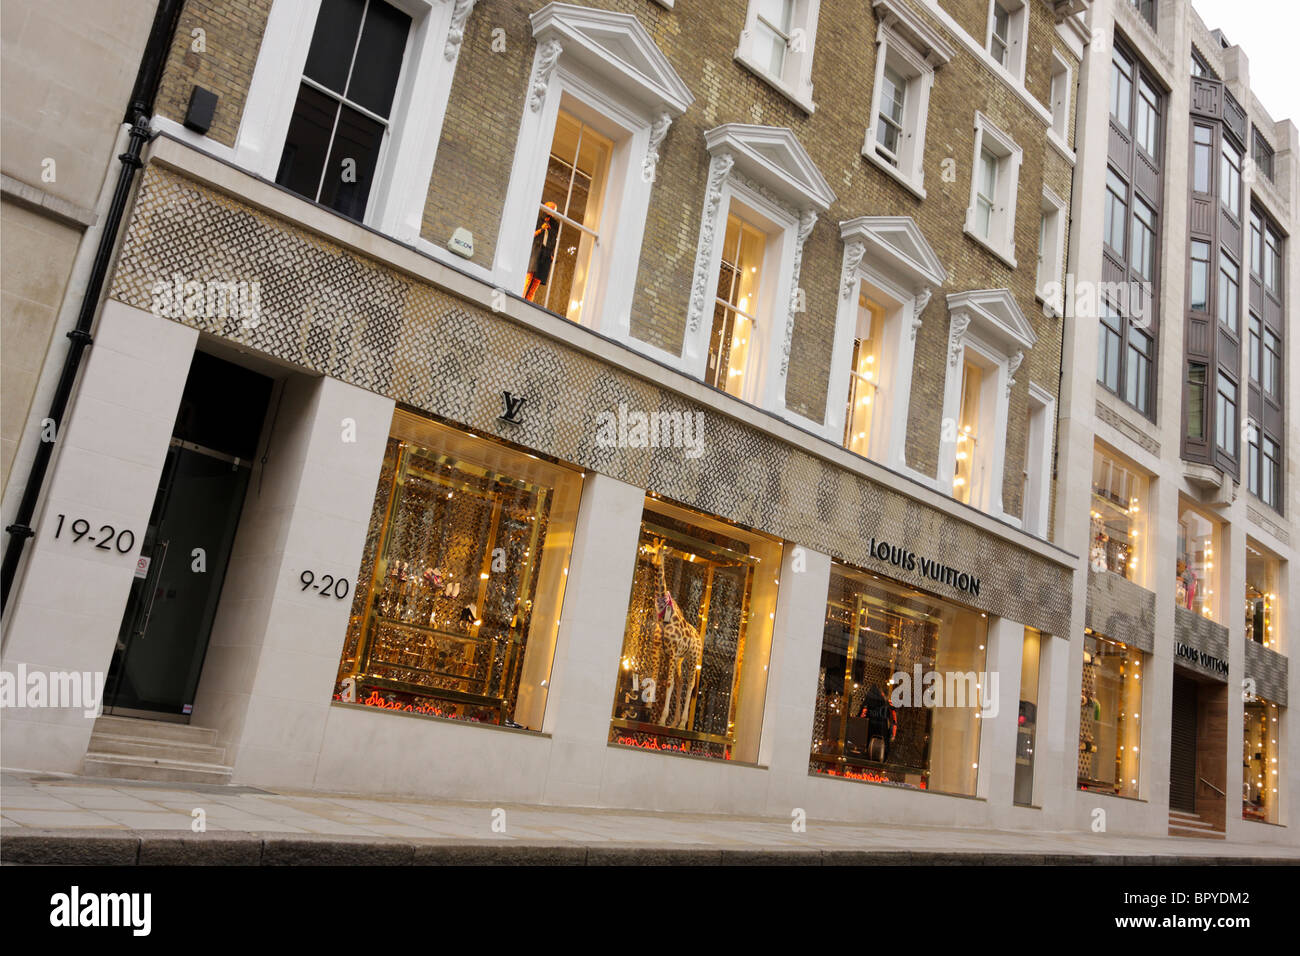 Louis Vuitton New Bond Street, 2010-09-16